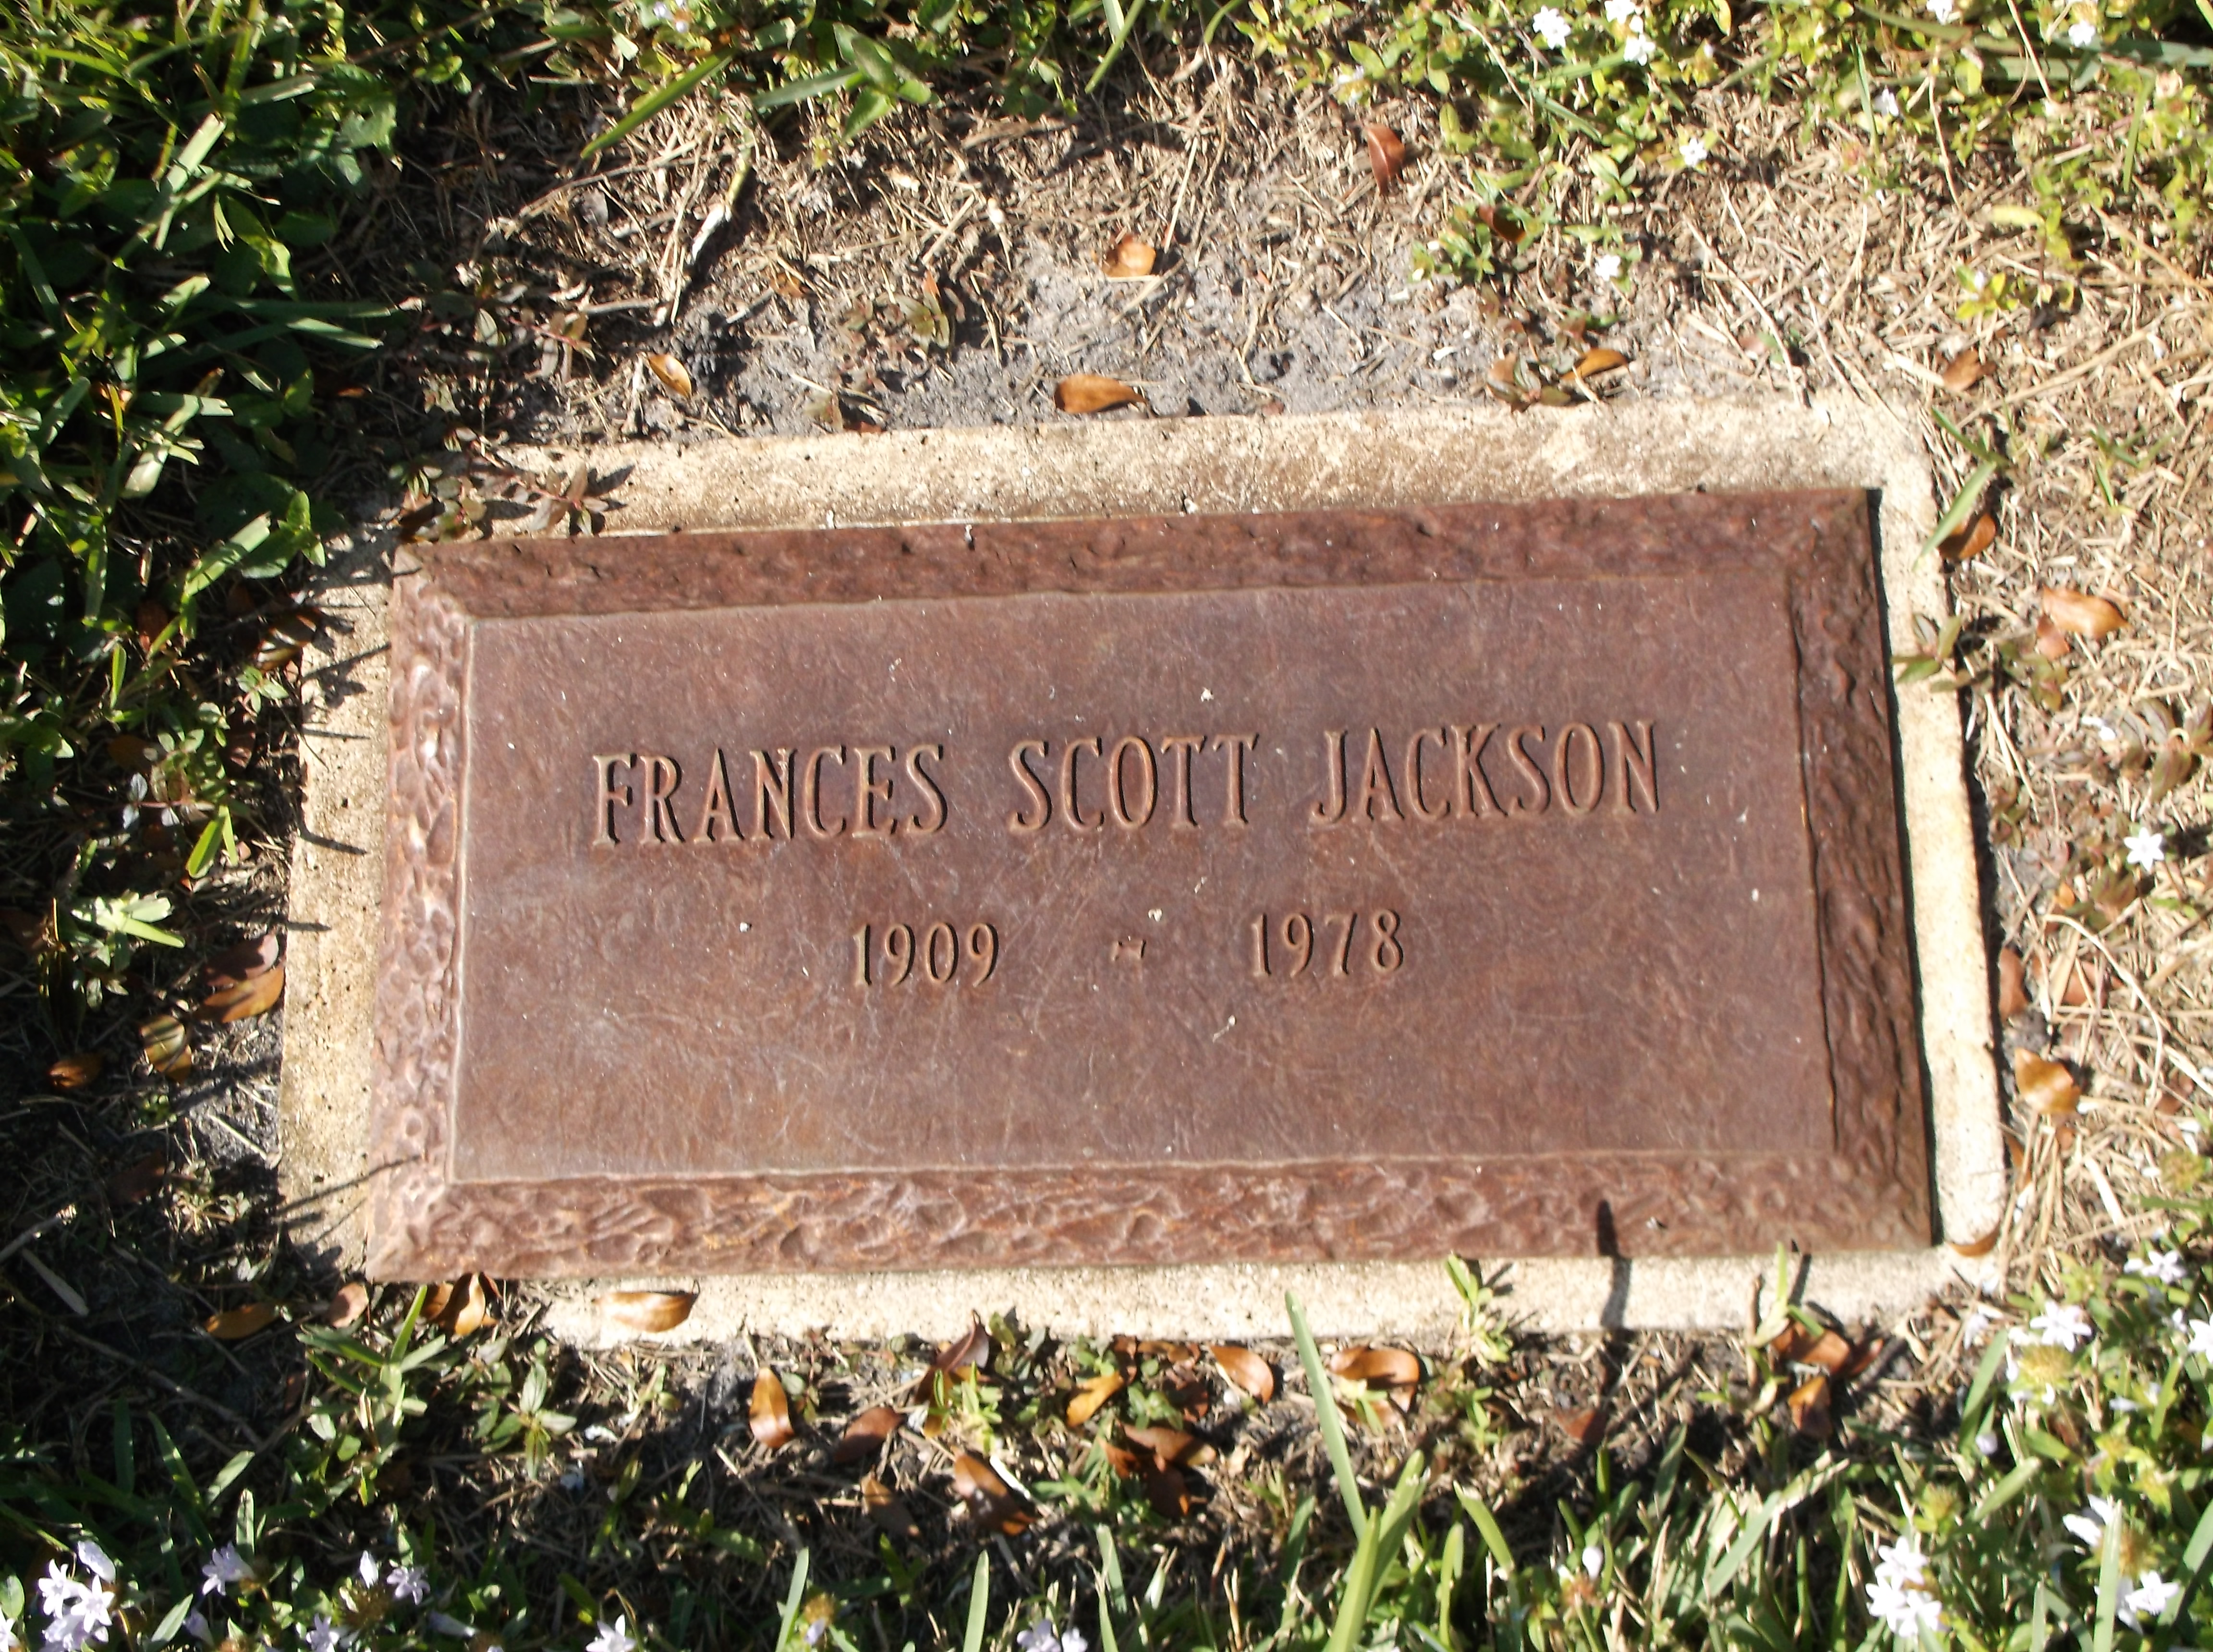 Frances Scott Jackson